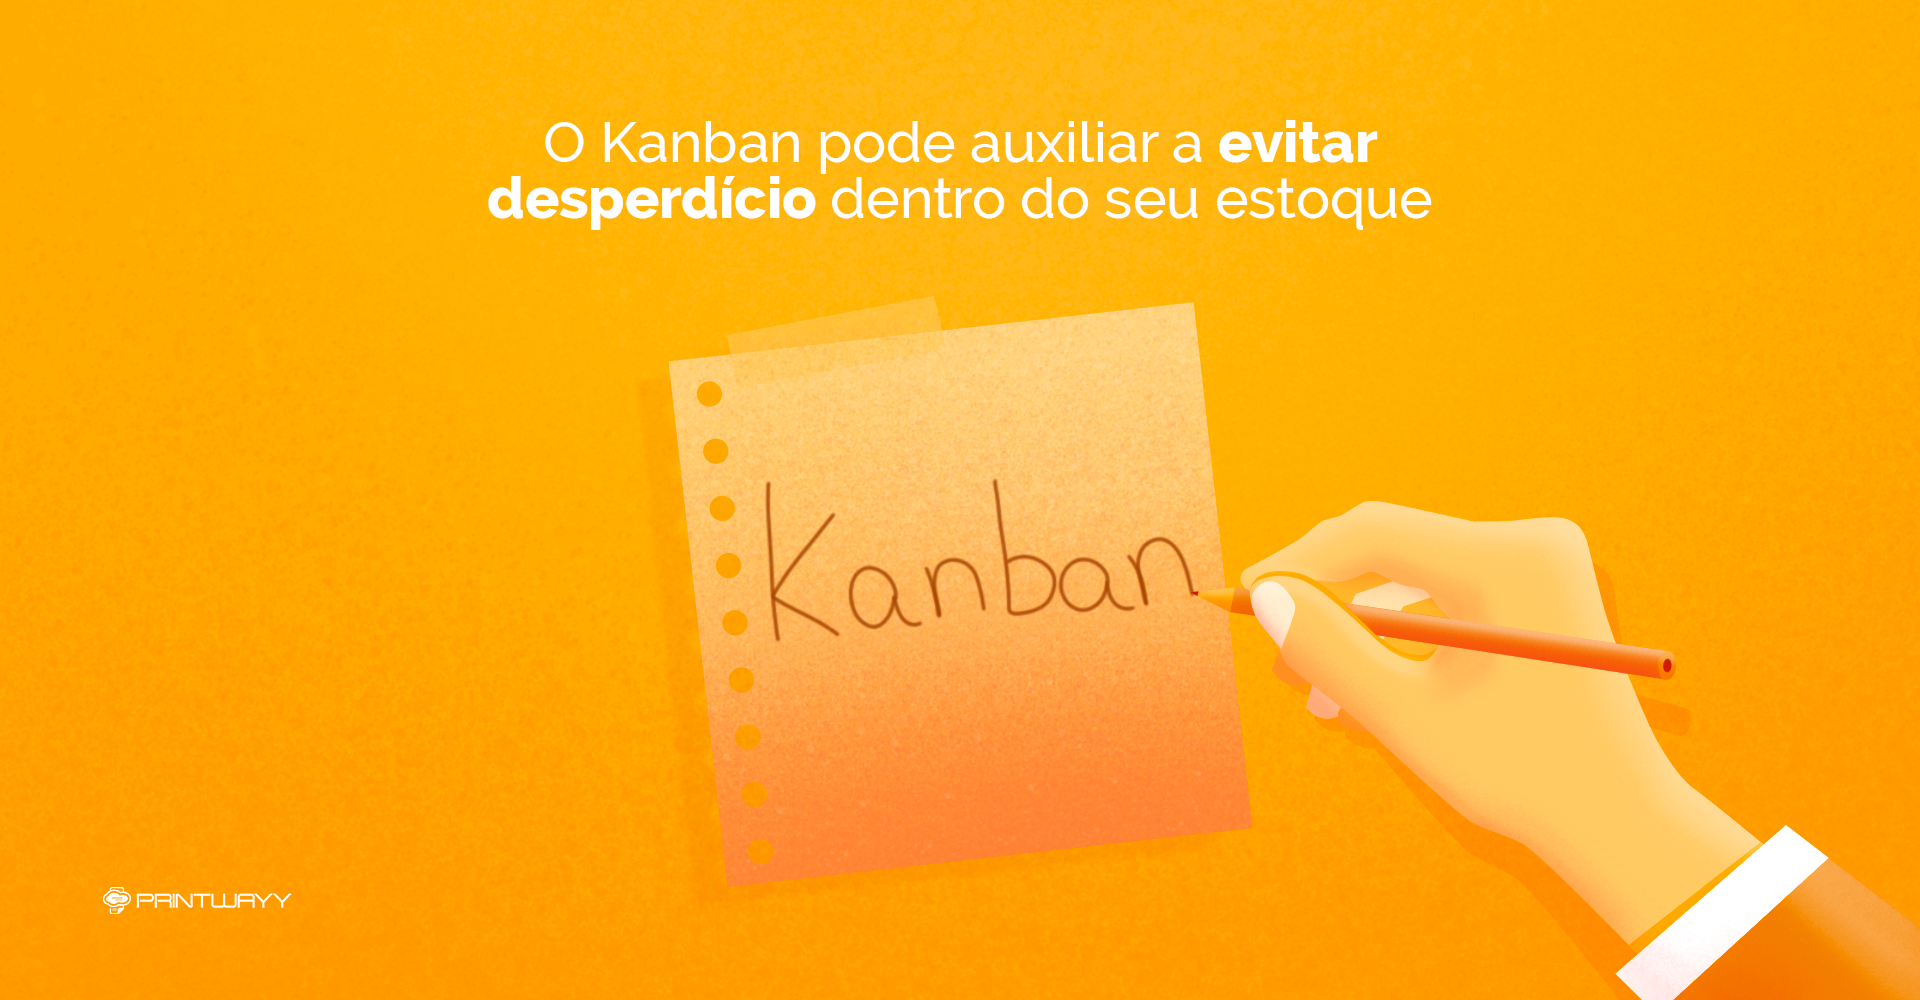 Ilustração de uma pessoa segurando um lápis, e escrevendo “Kanban” em um cartão.